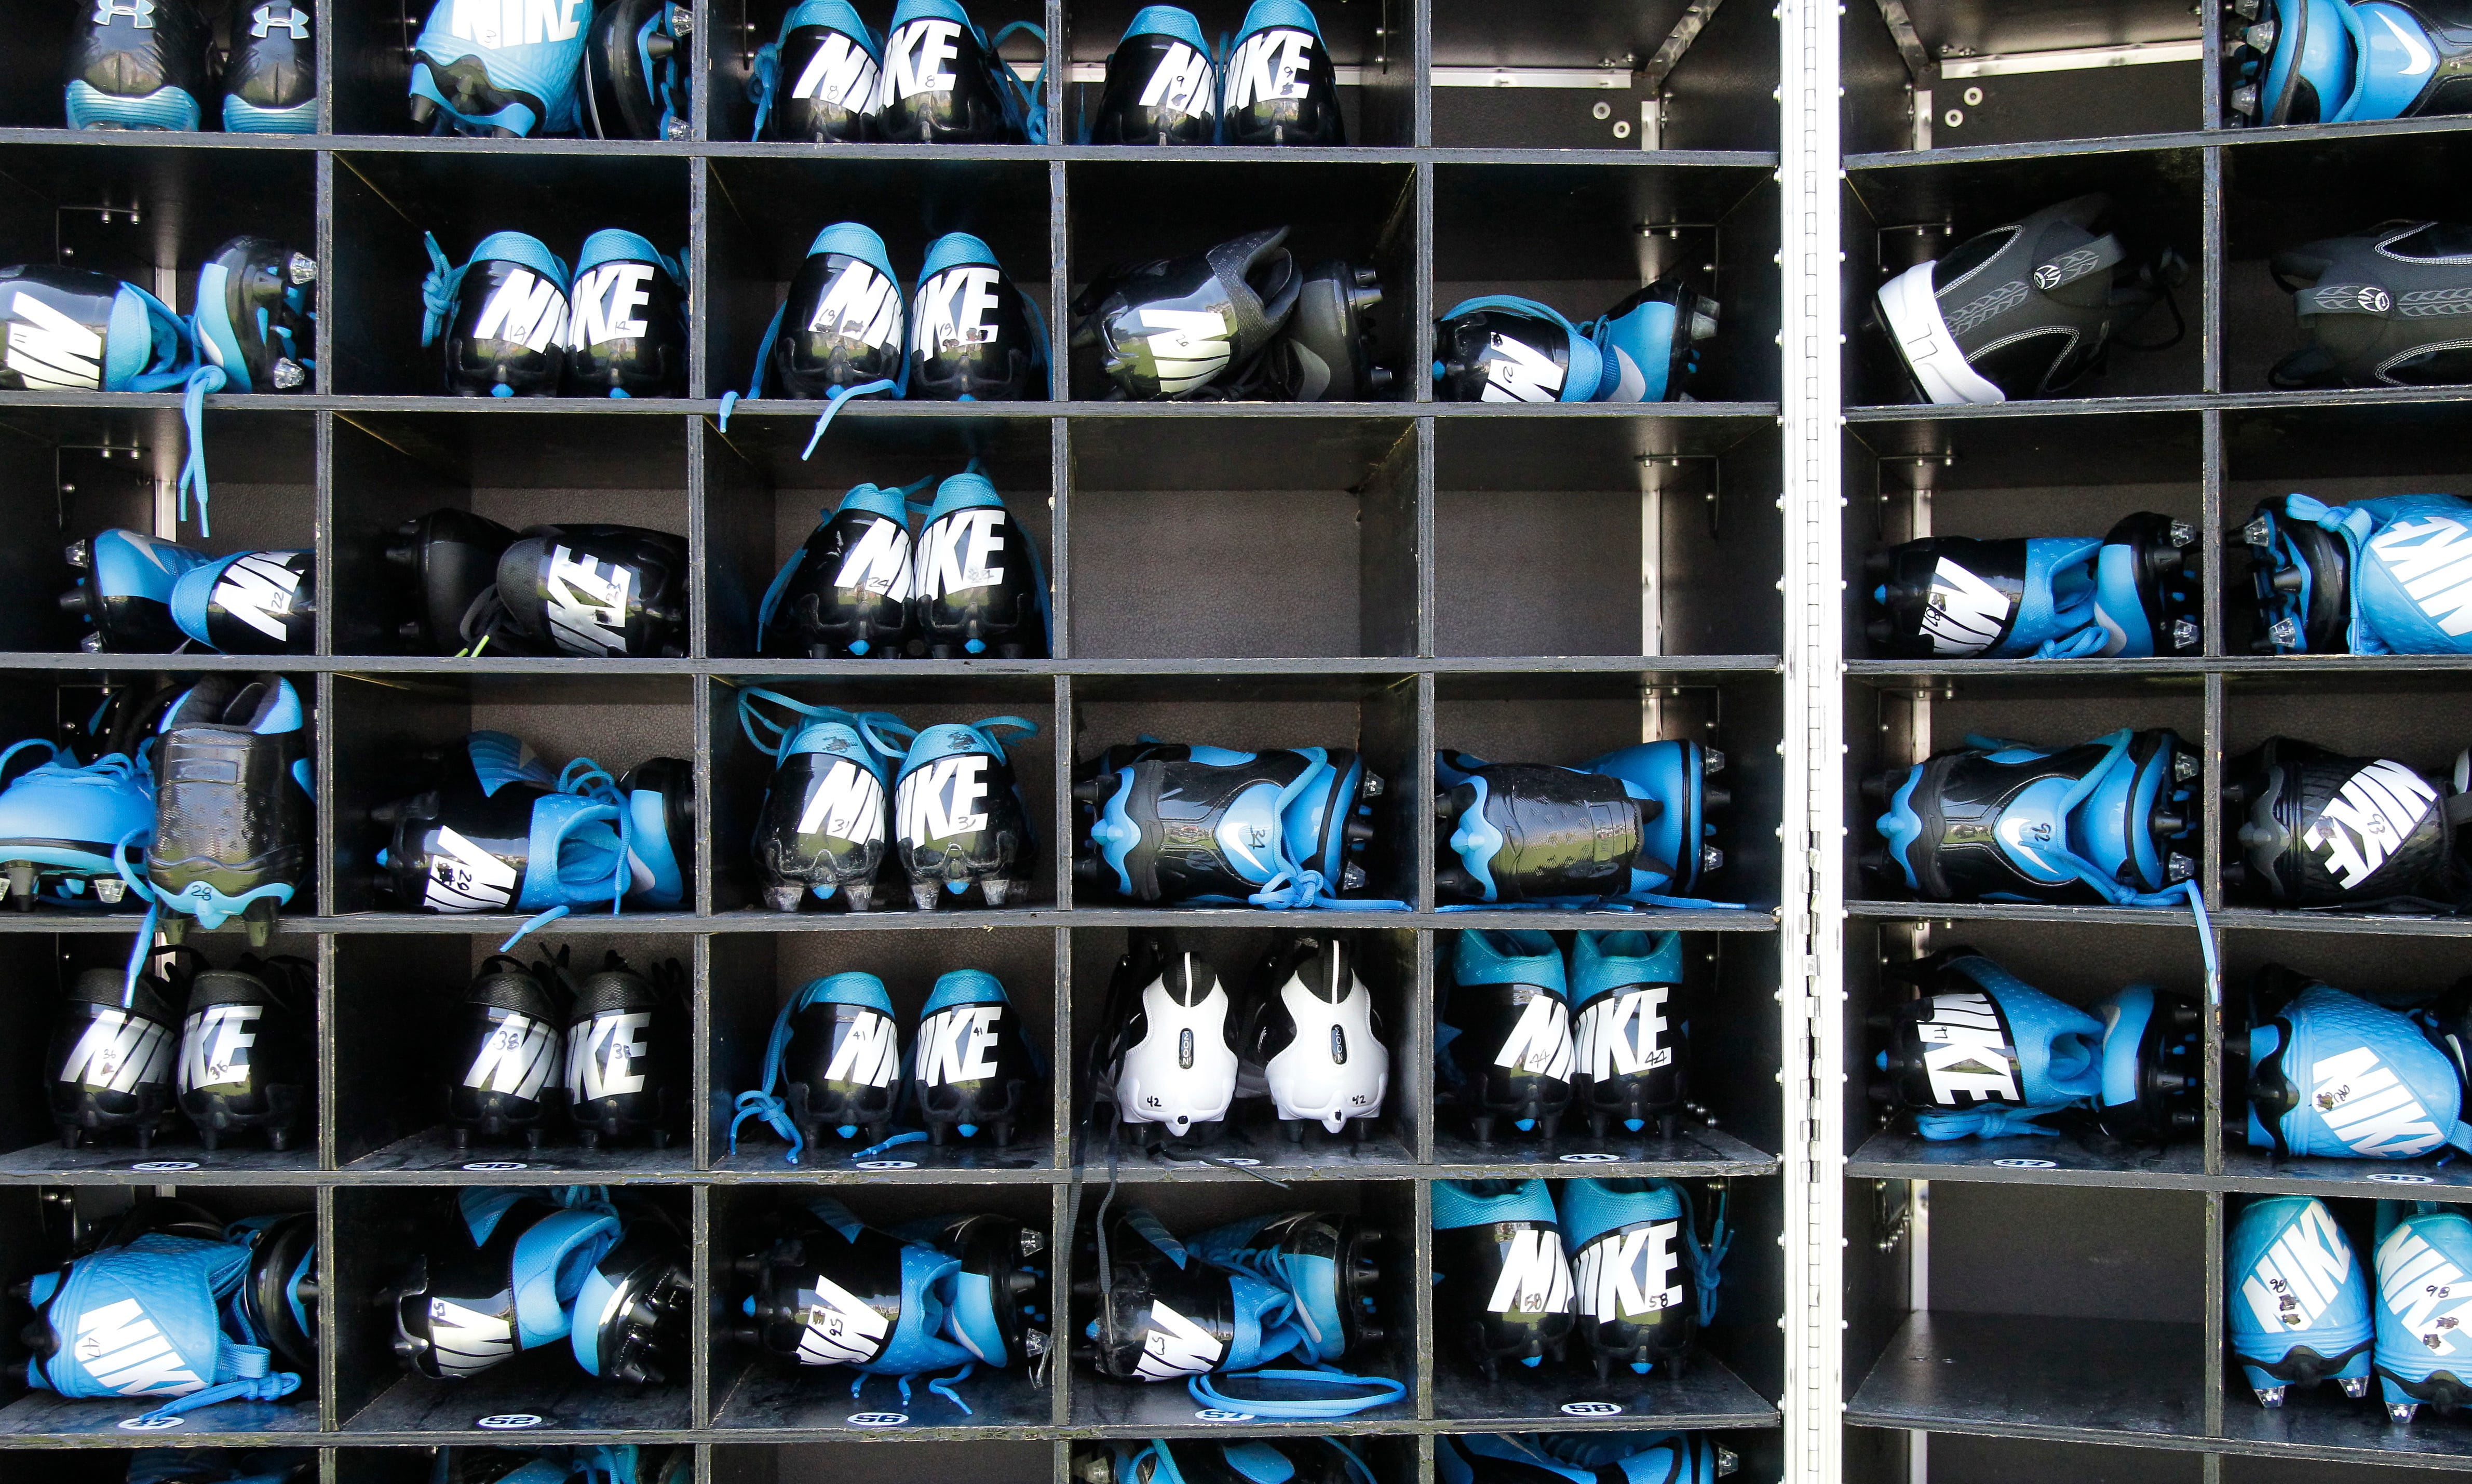 Colin Kaepernick: Nike's 'Just Do It' has origin